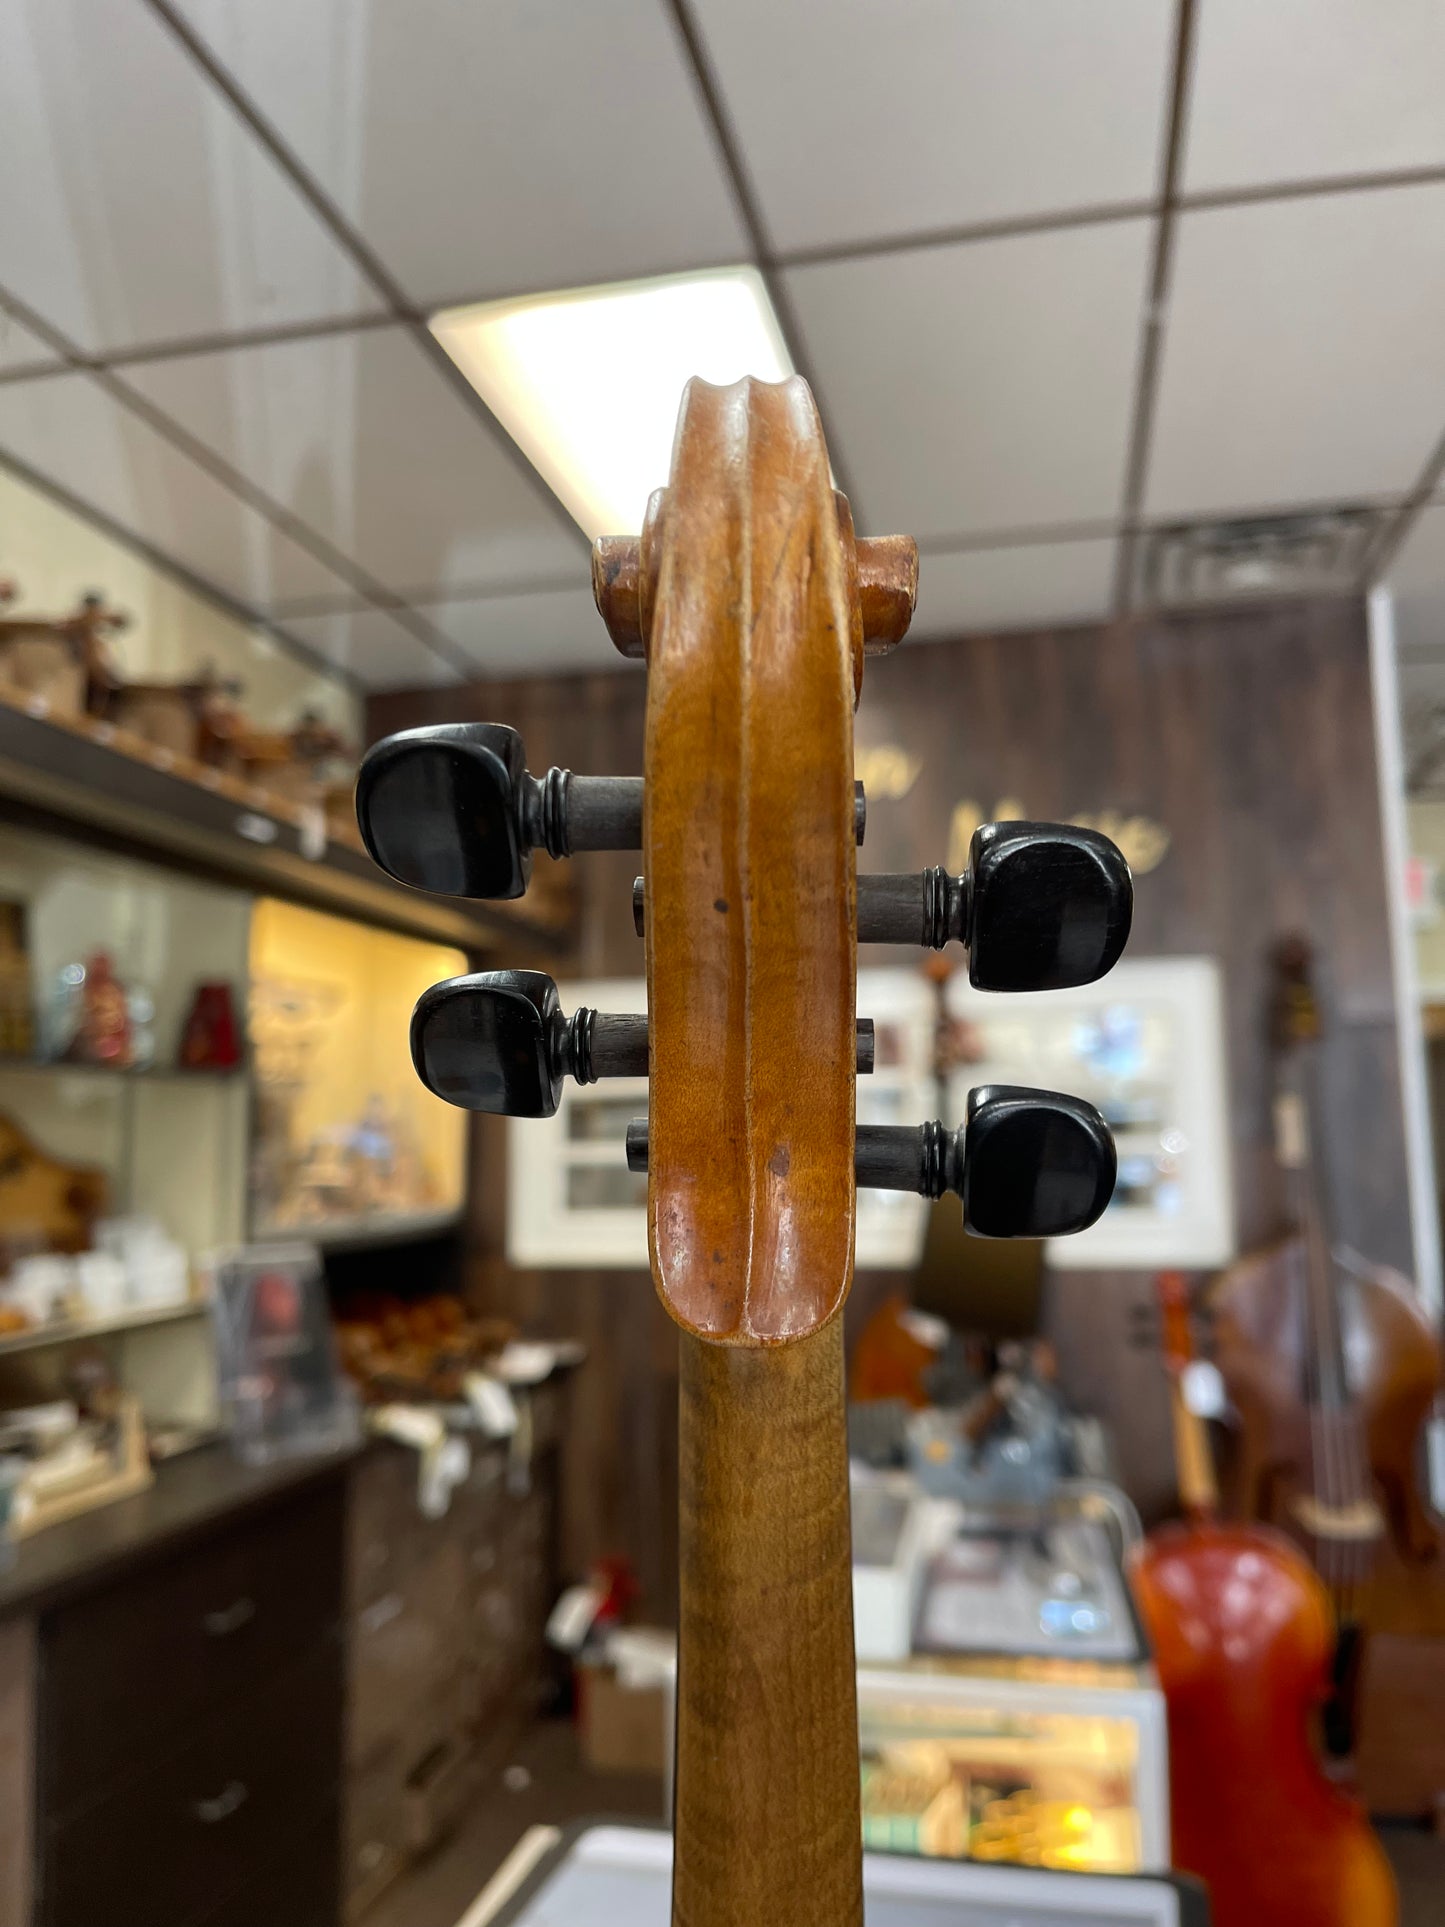 Reisert Shop German Violin